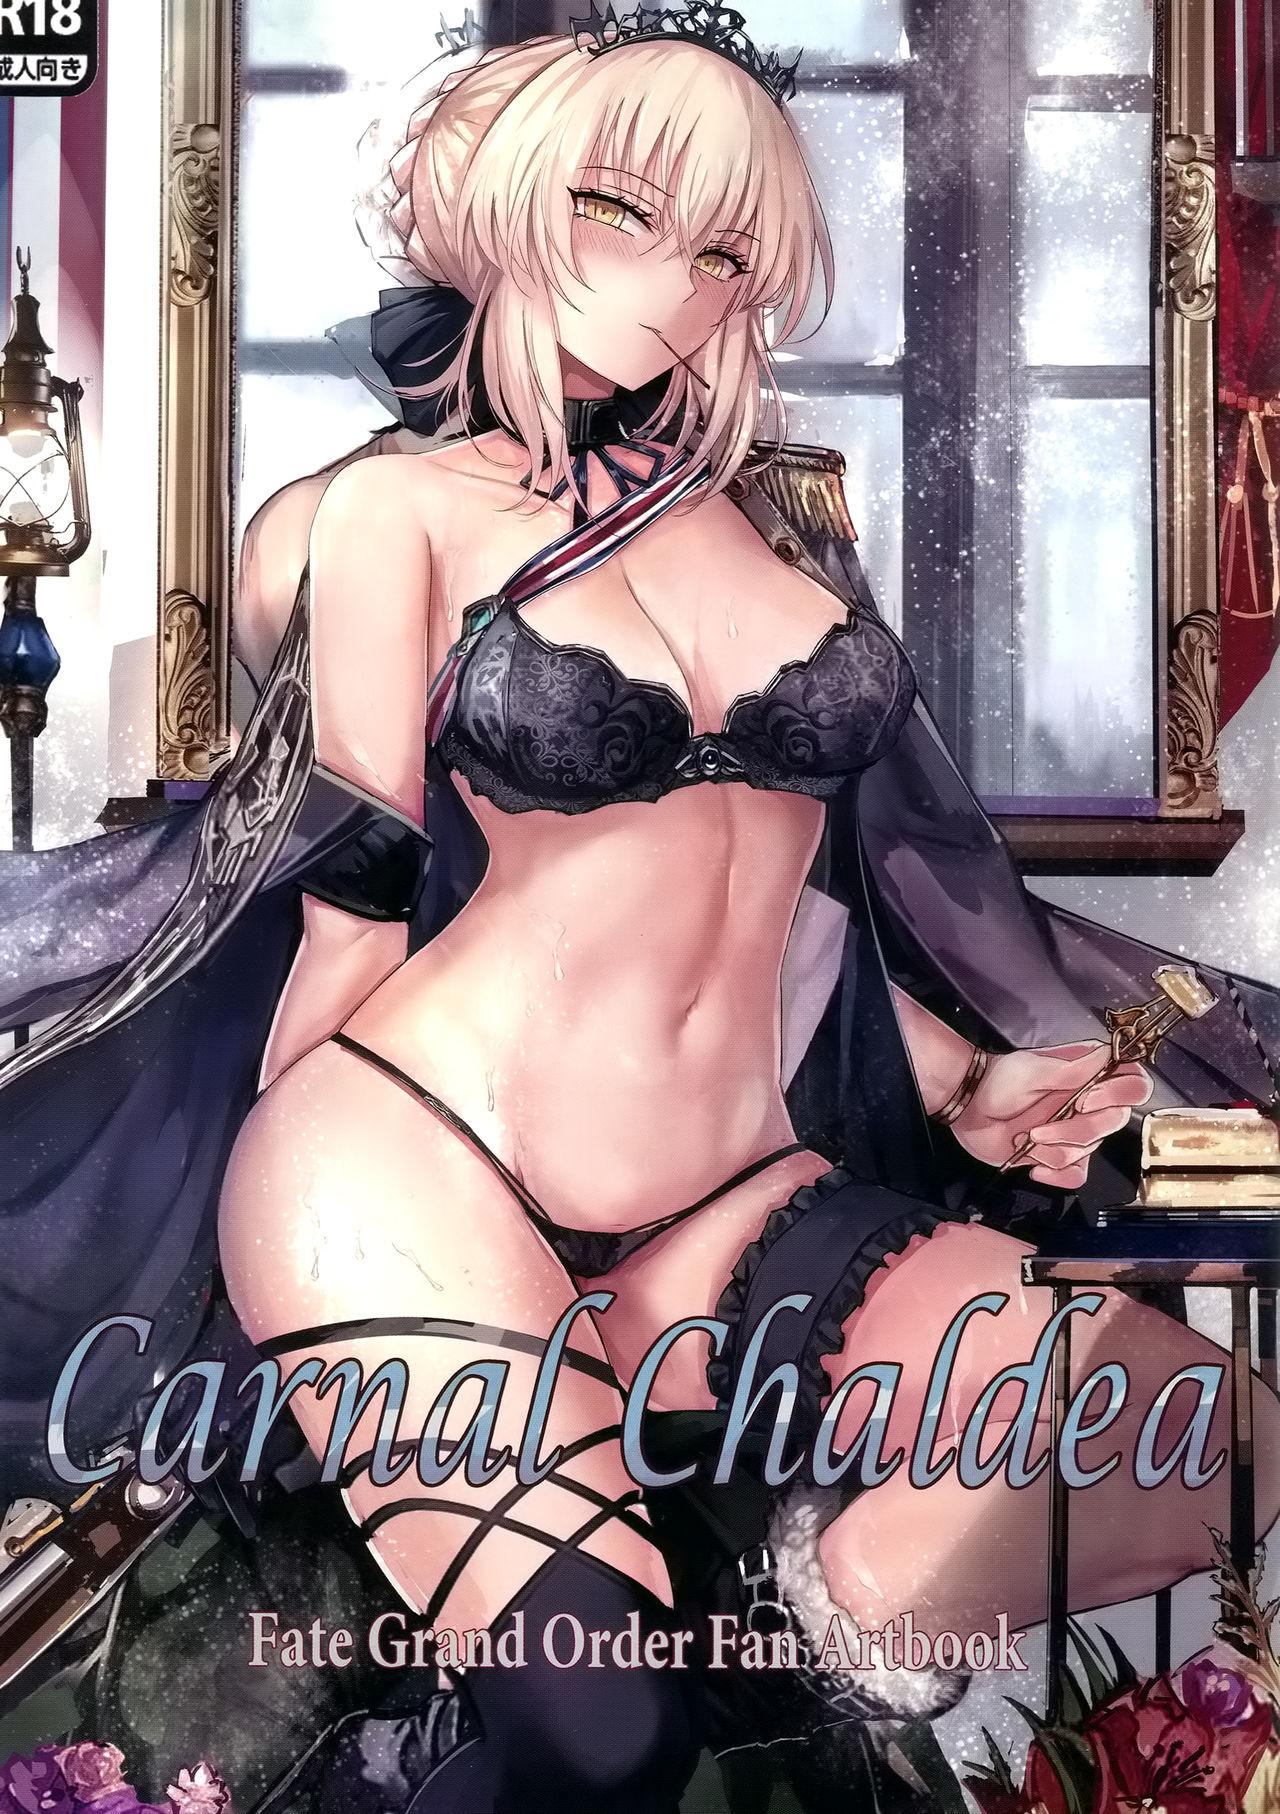 Cop Carnal Chaldea - Fate grand order Female - Picture 1